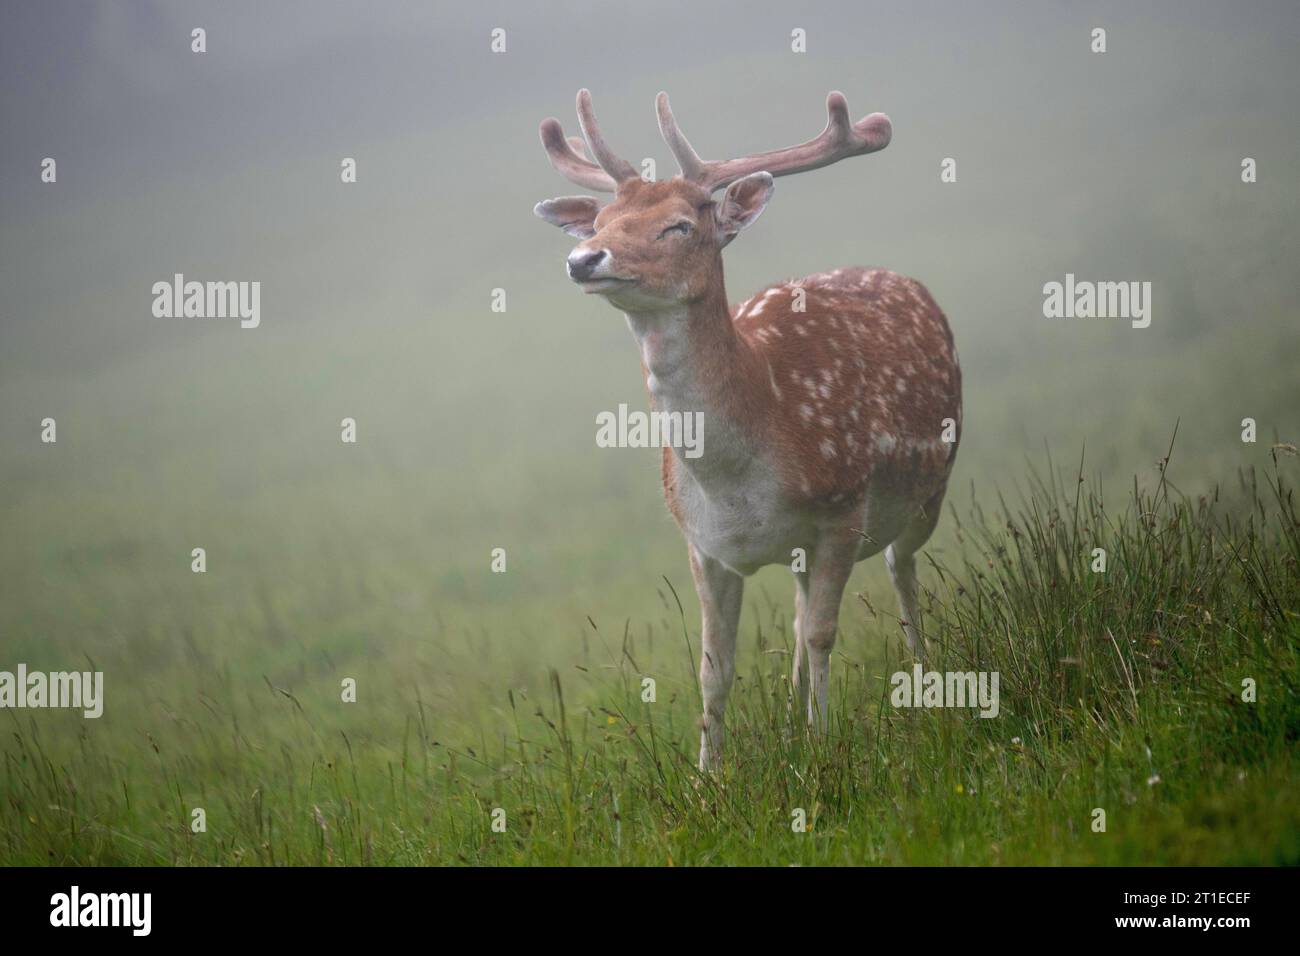 Cervo europeo a riposo (dama dama), cervo a riposo con gli occhi chiusi nella nebbia Foto Stock